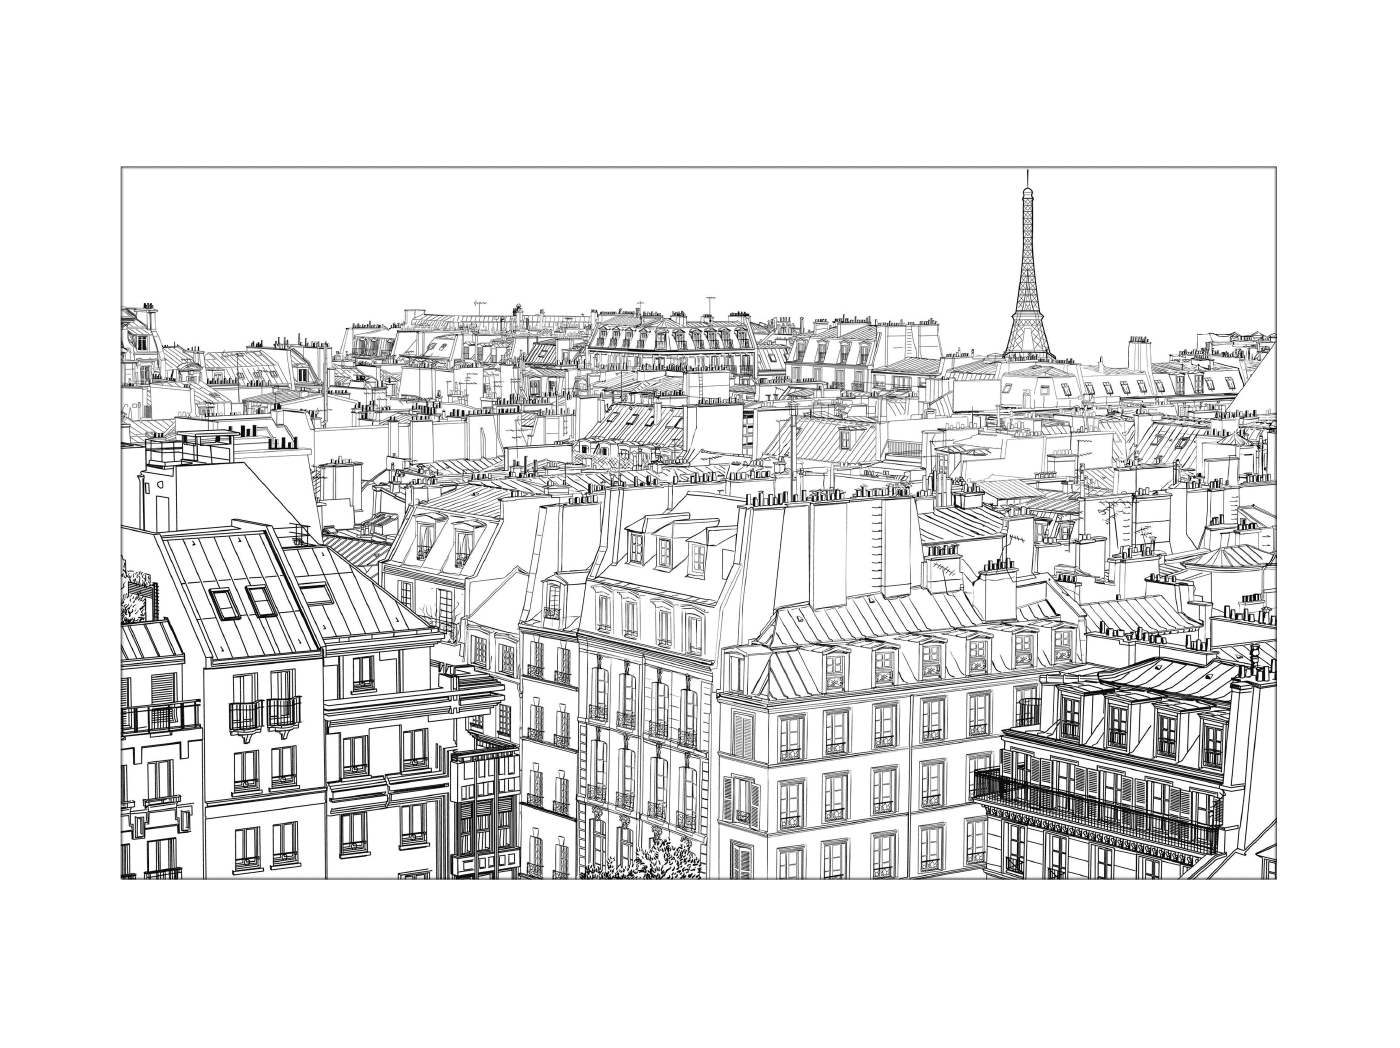  Площадь зданий Париж 